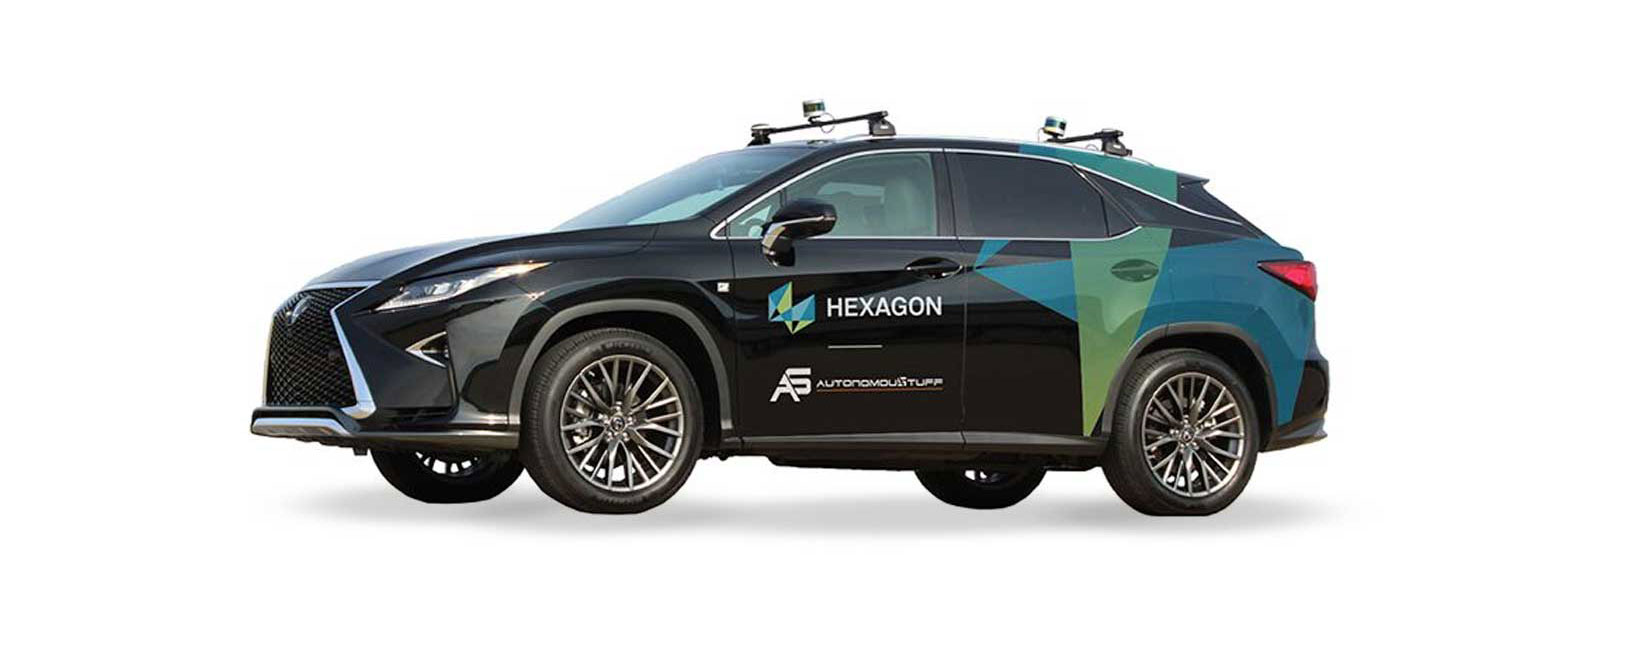 Image d’un véhicule de marque Hexagon doté de capacités autonomes